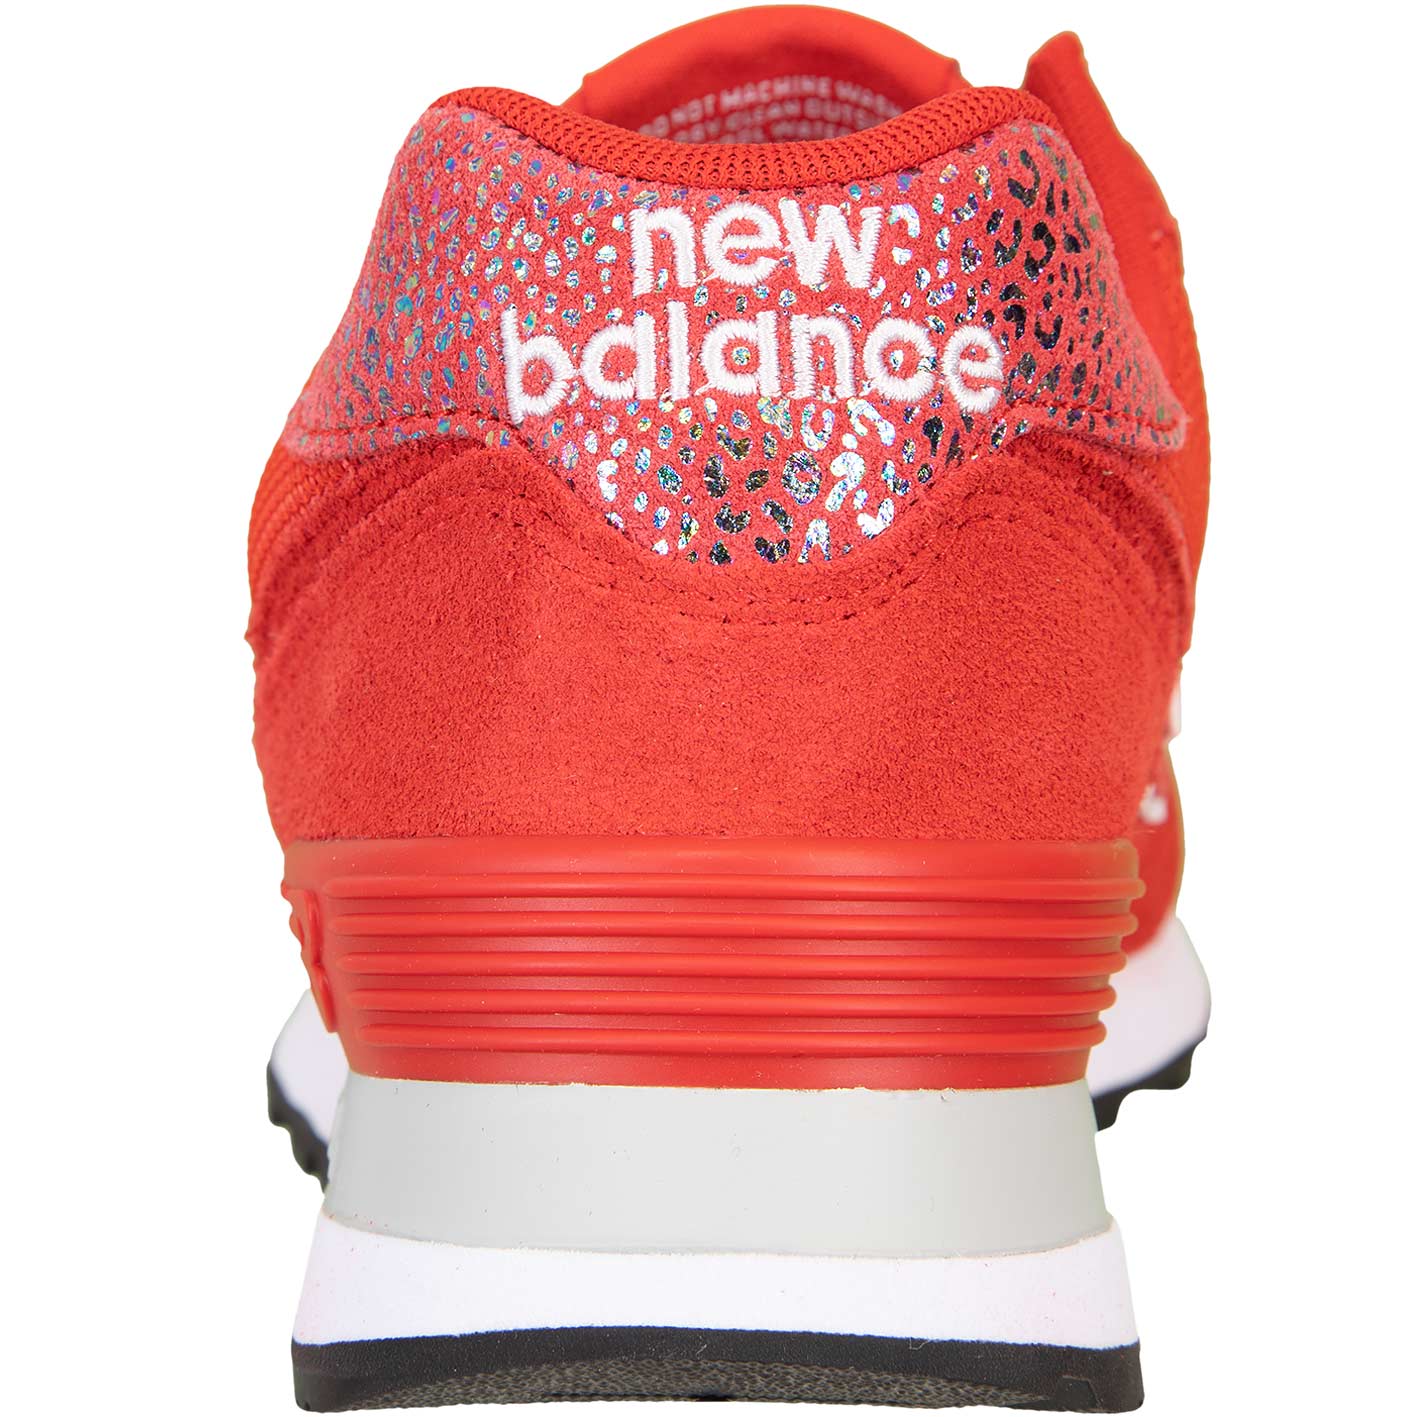 ☆ New Balance NB 574 Damen Sneaker rot - hier bestellen!